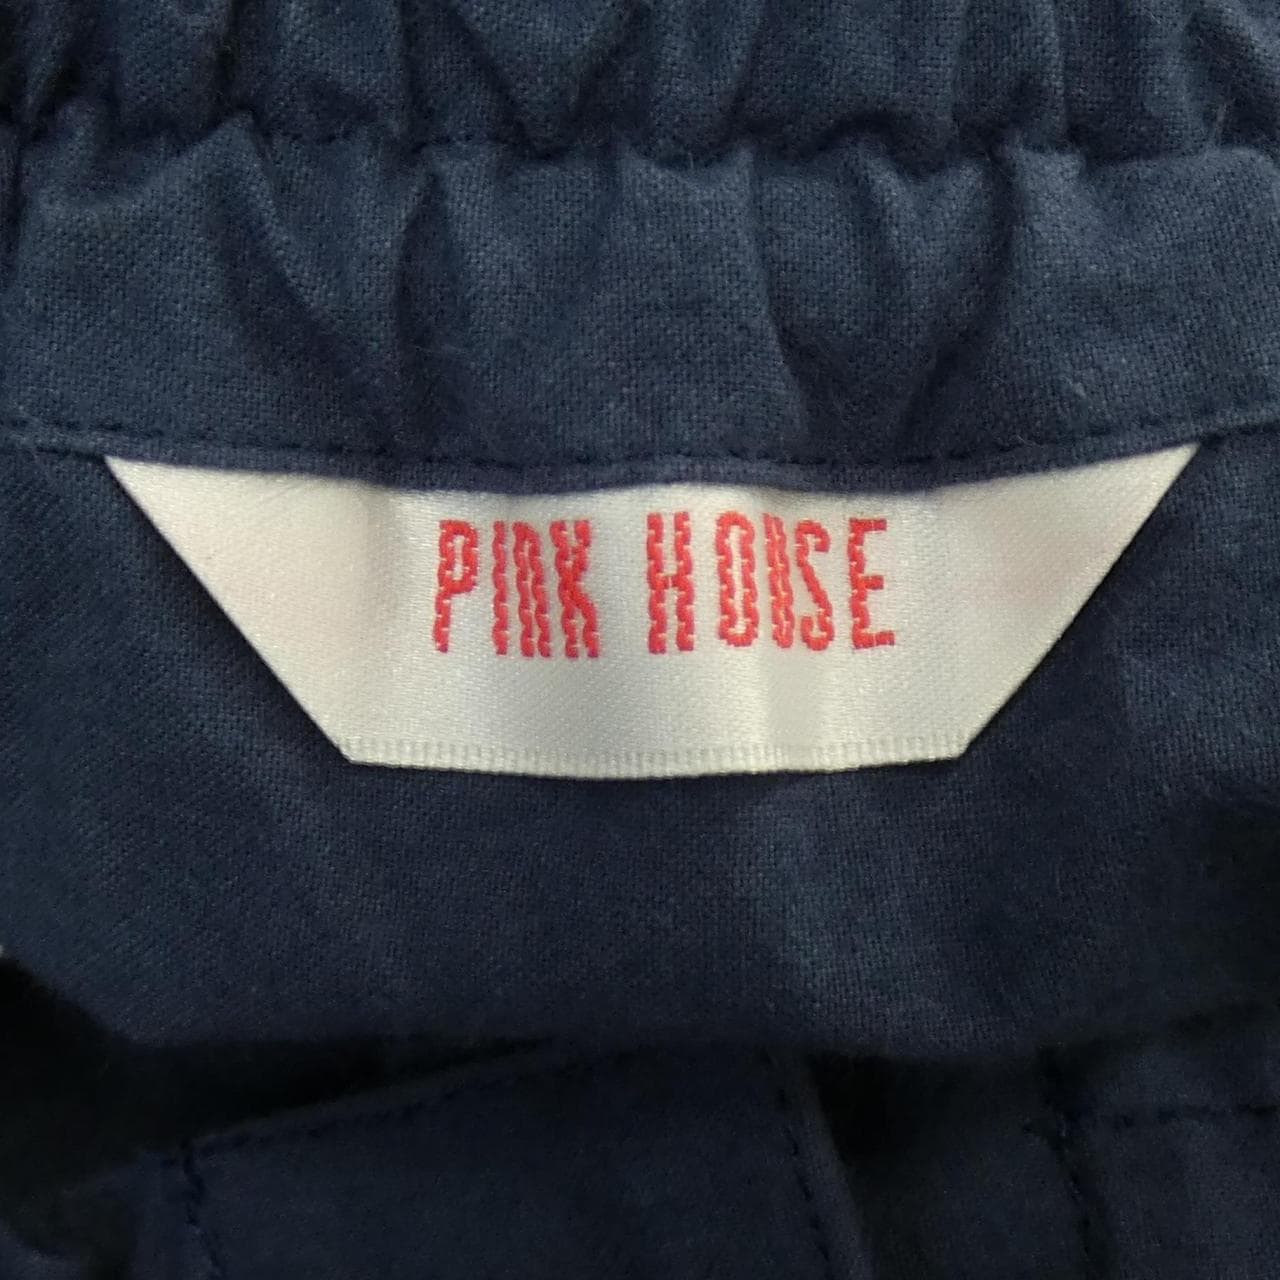 粉房PINK HOUSE裙